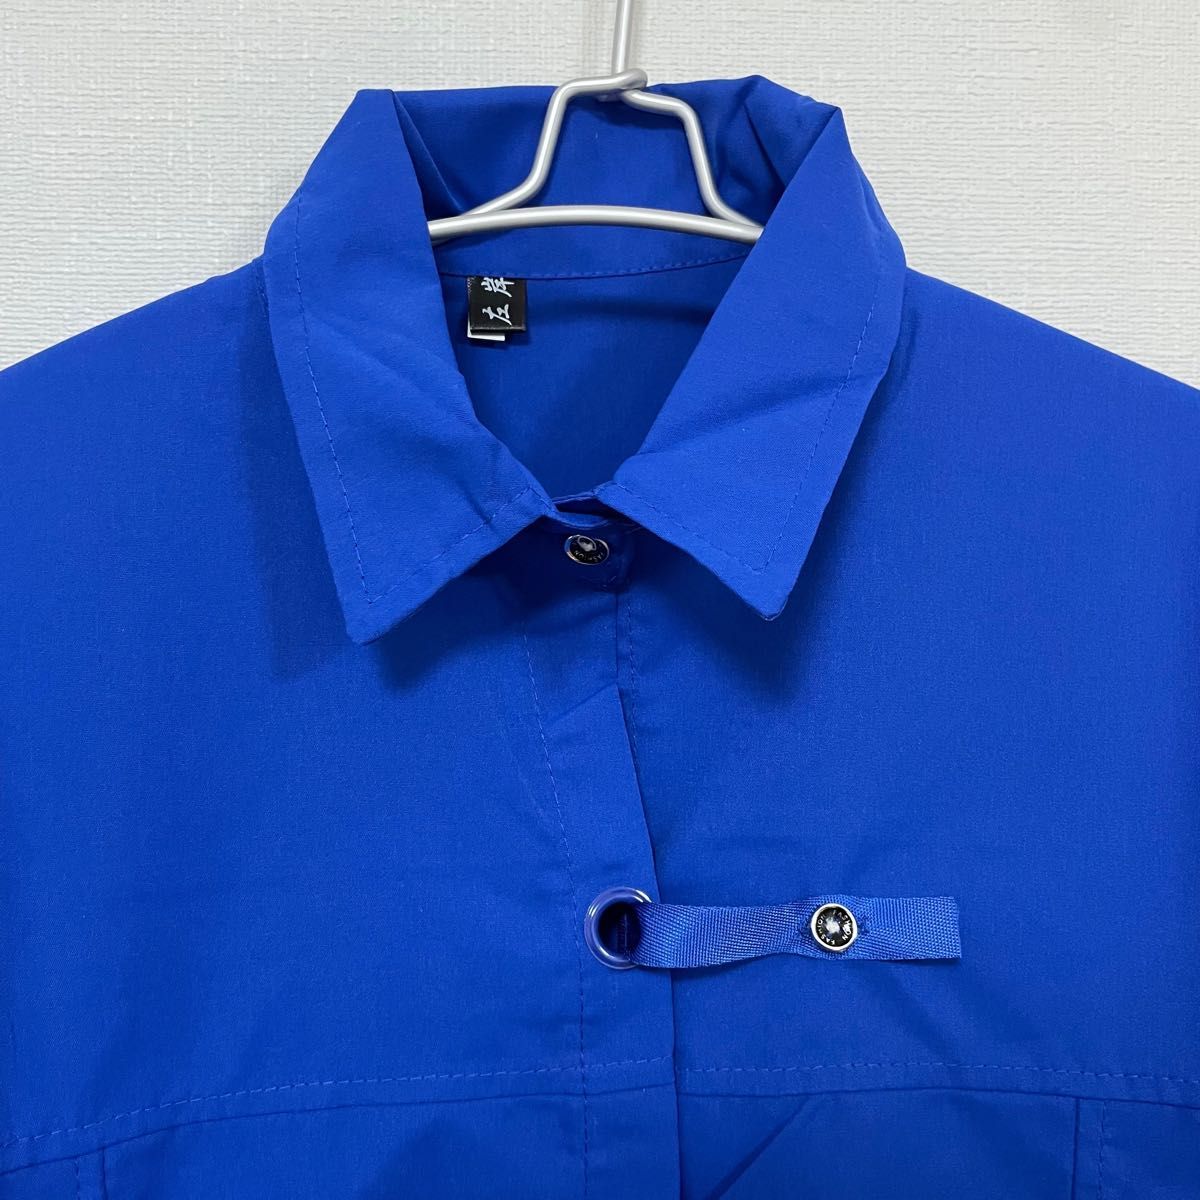 【最終値下げ】新品 メンズ チャイナボタンシャツ デザインシャツ ブルー XL オーバーシャツ カジュアル